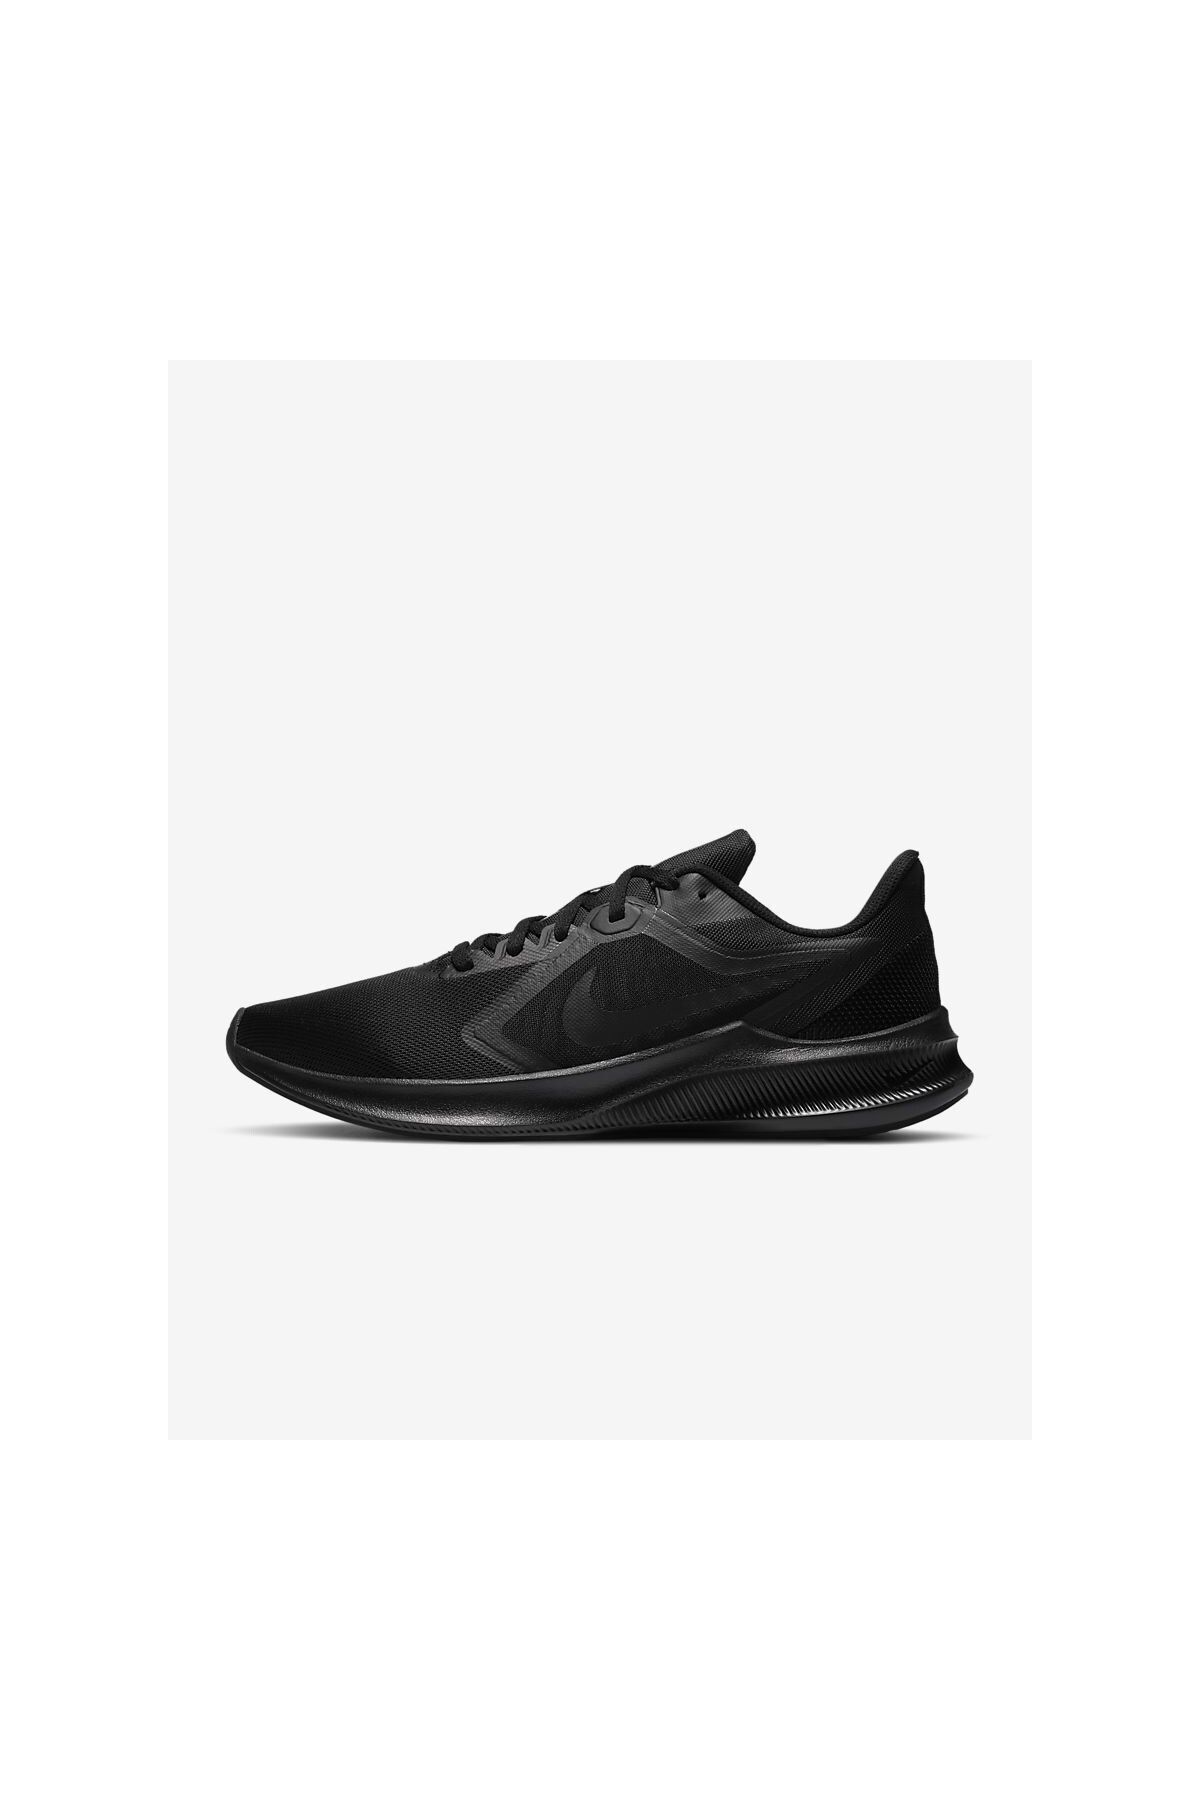 Nike Ci9984 003 Downshifter 10 Kadin Spor Ayakkabı Siyah